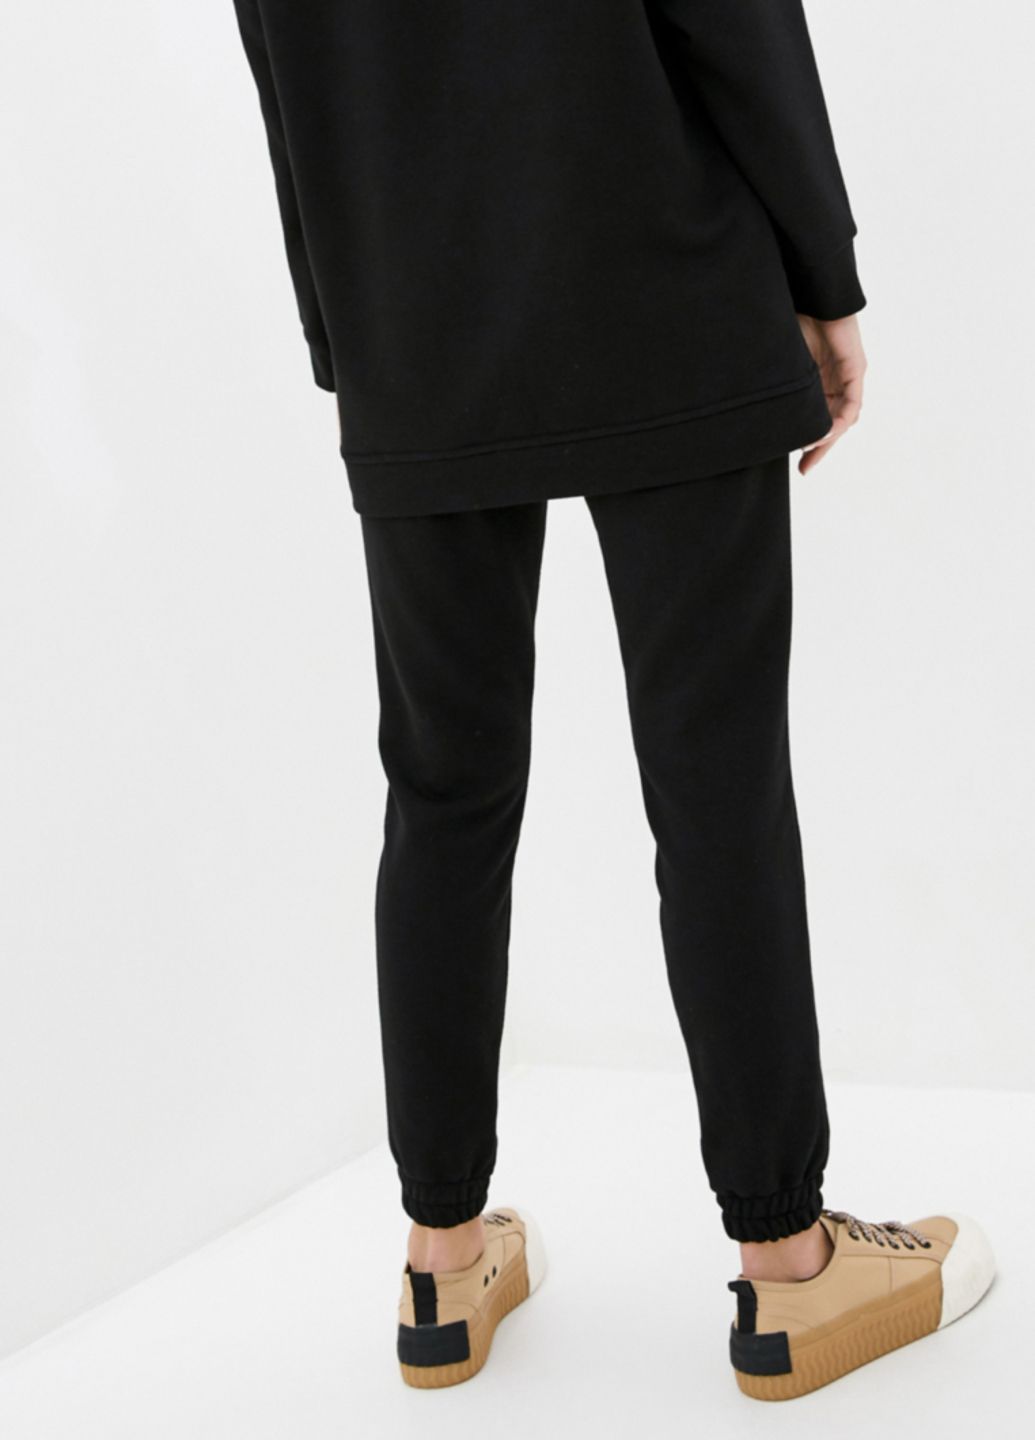 Купить Спортивные штаны женские Merlini Мадрид 600000046 - Черный, 42-44 в интернет-магазине